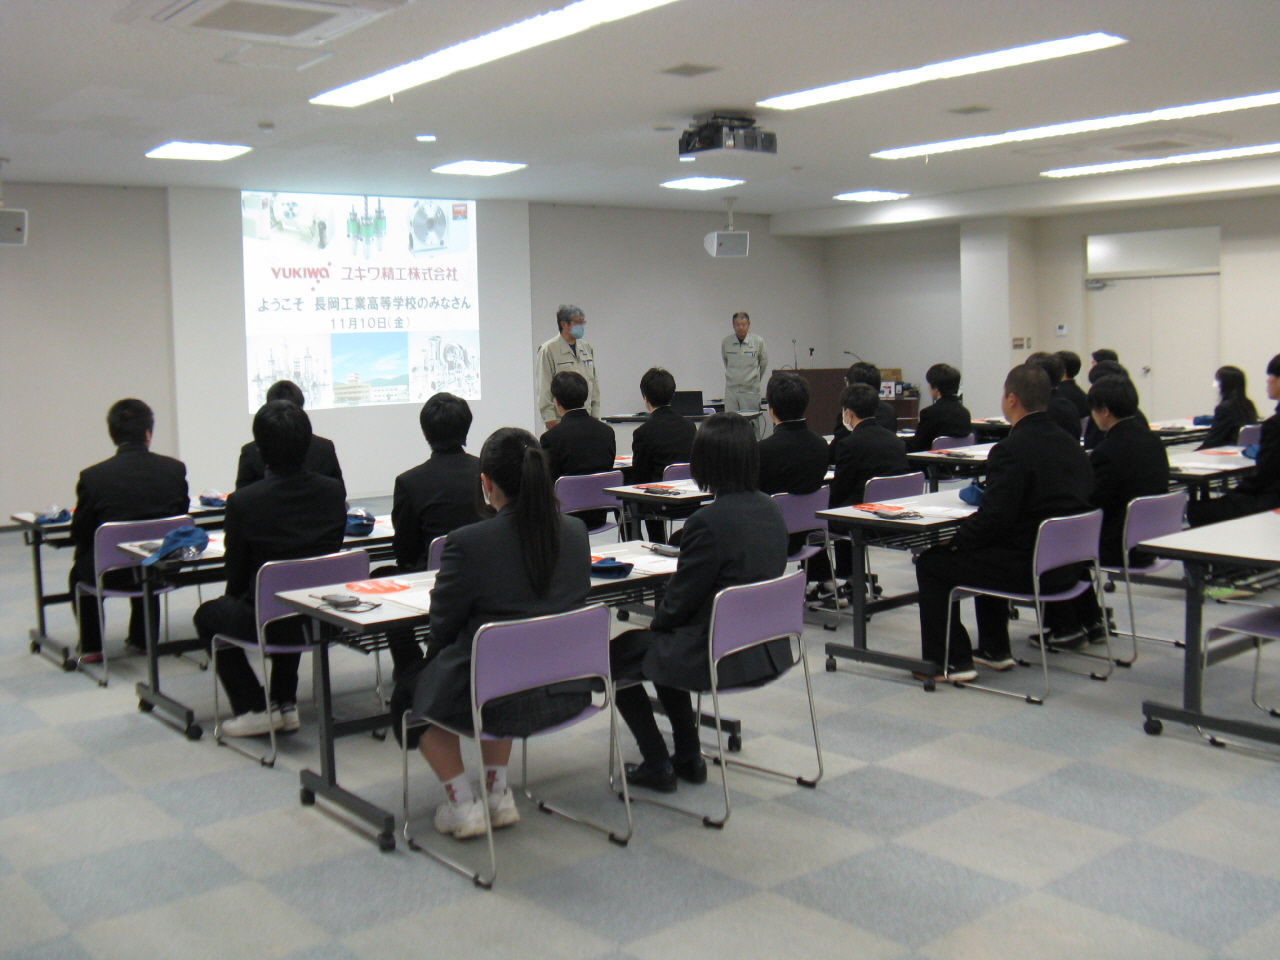 長岡工業高等高校の皆さまが工場見学に来社されました。

